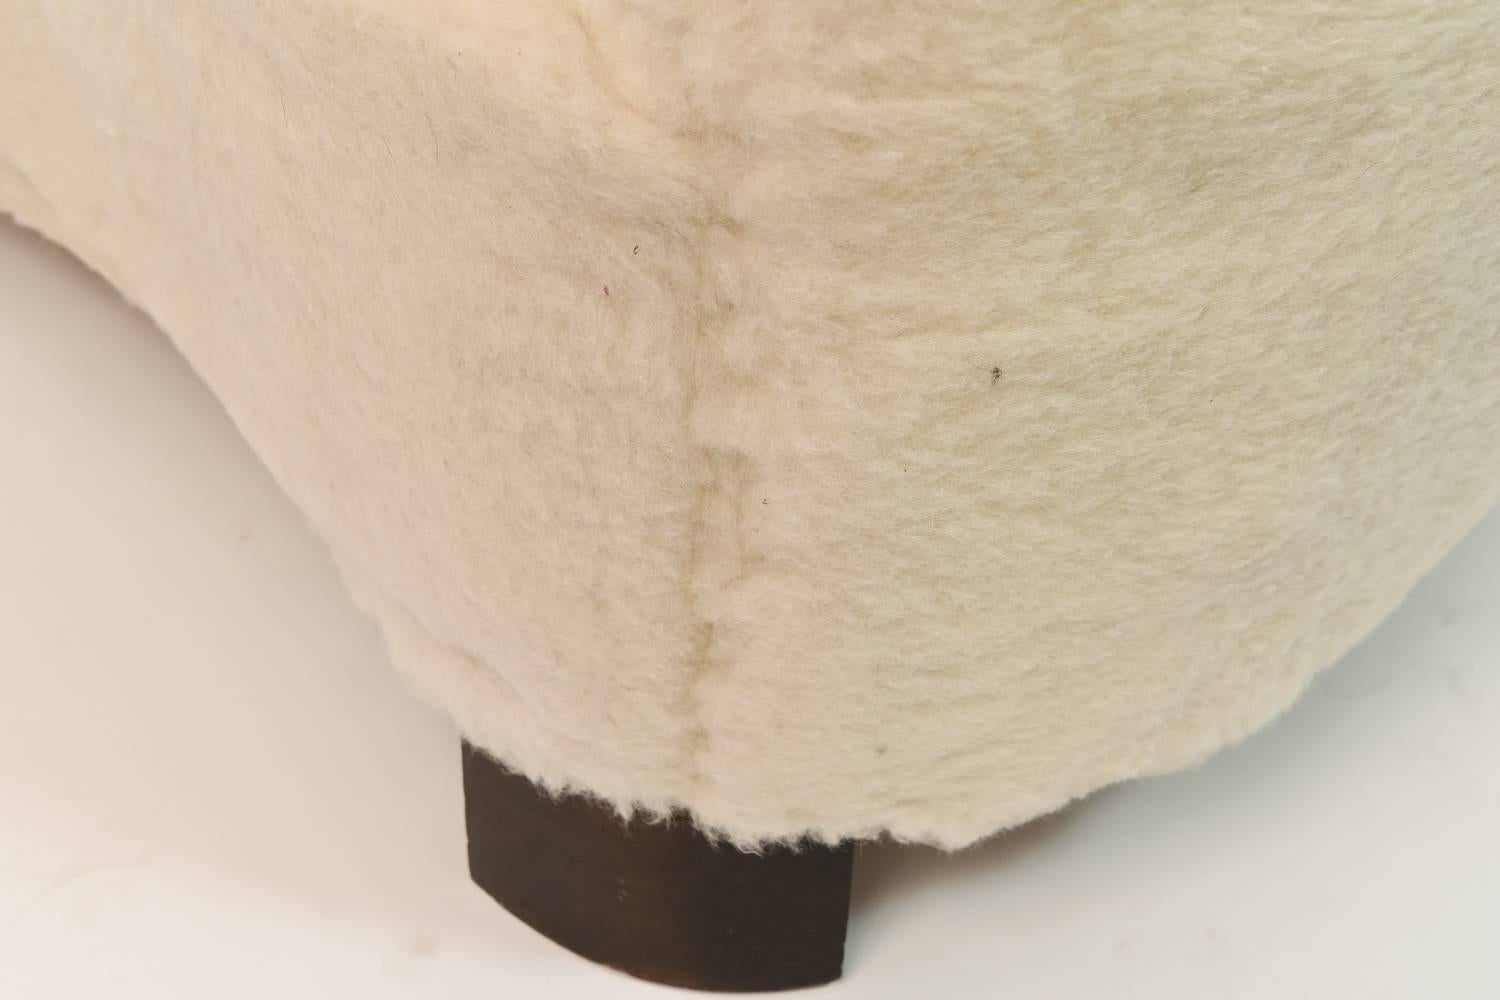 Mid-20th Century Slagelse Møbelværk Model 15 Lambs Wool Upholstered Banana Shape Loveseat